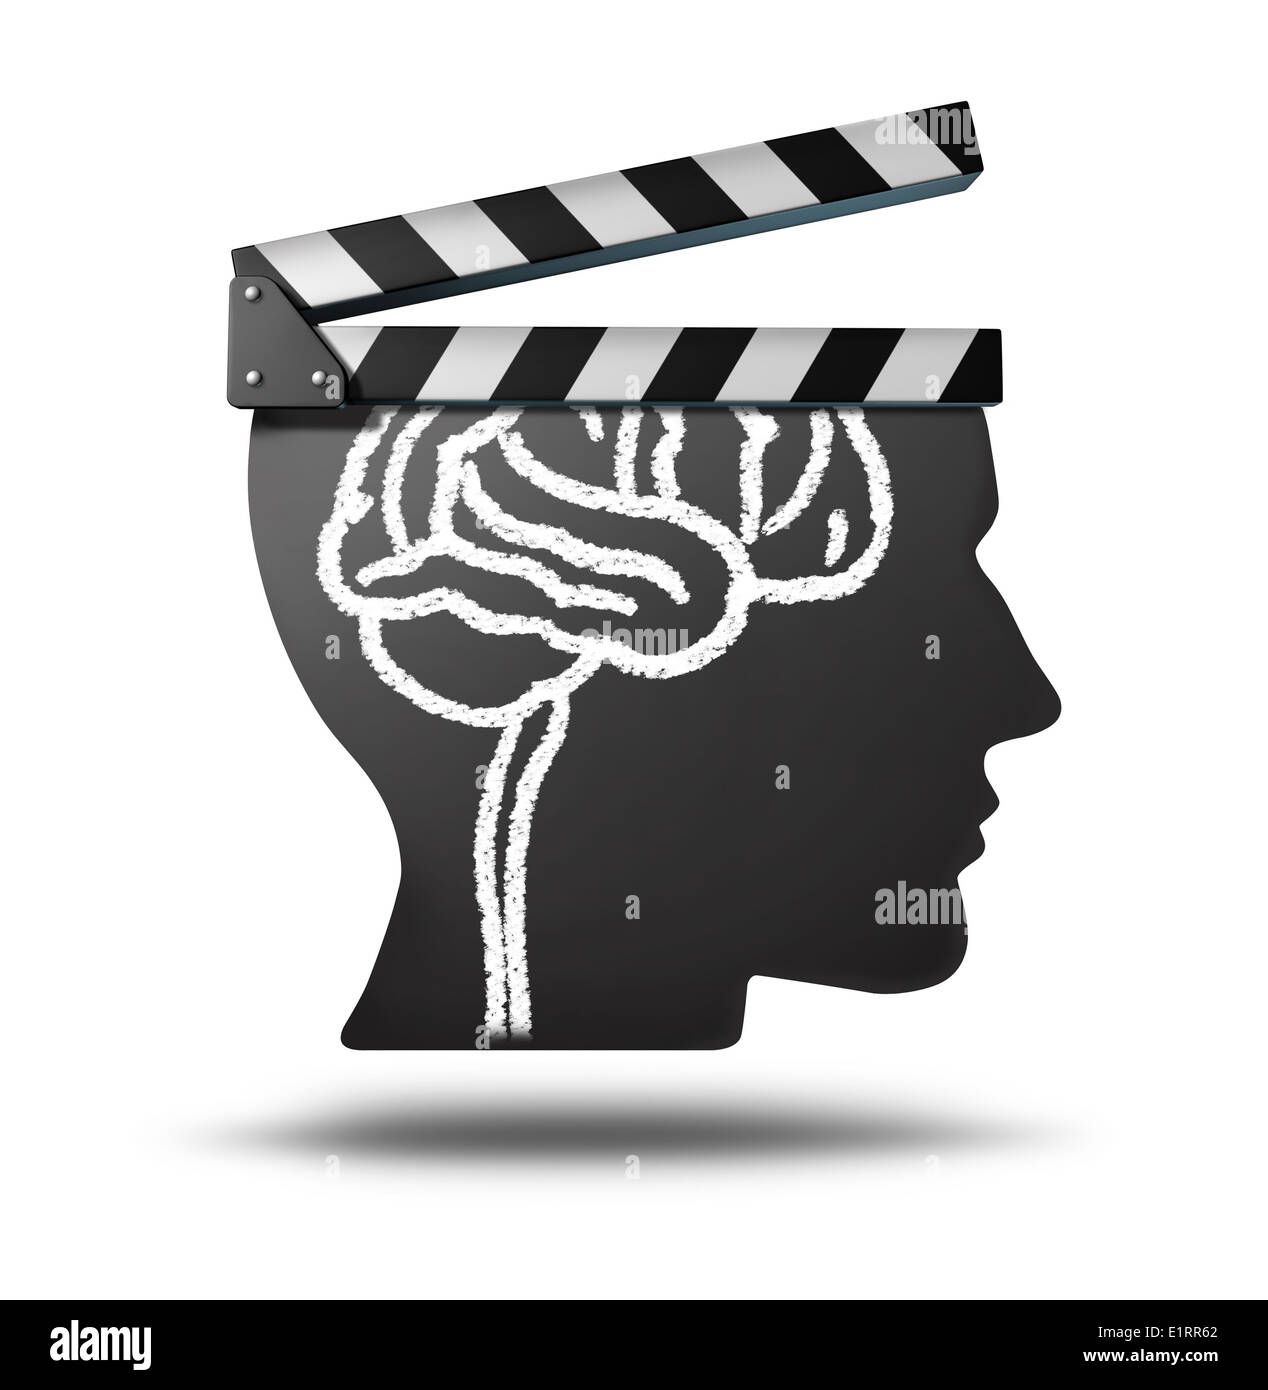 Educación y aprendizaje videos videos online como una herramienta para  educar y enseñar nuevas habilidades a través de los medios de  entretenimiento, como películas y documentales biografía o historia clips  en el